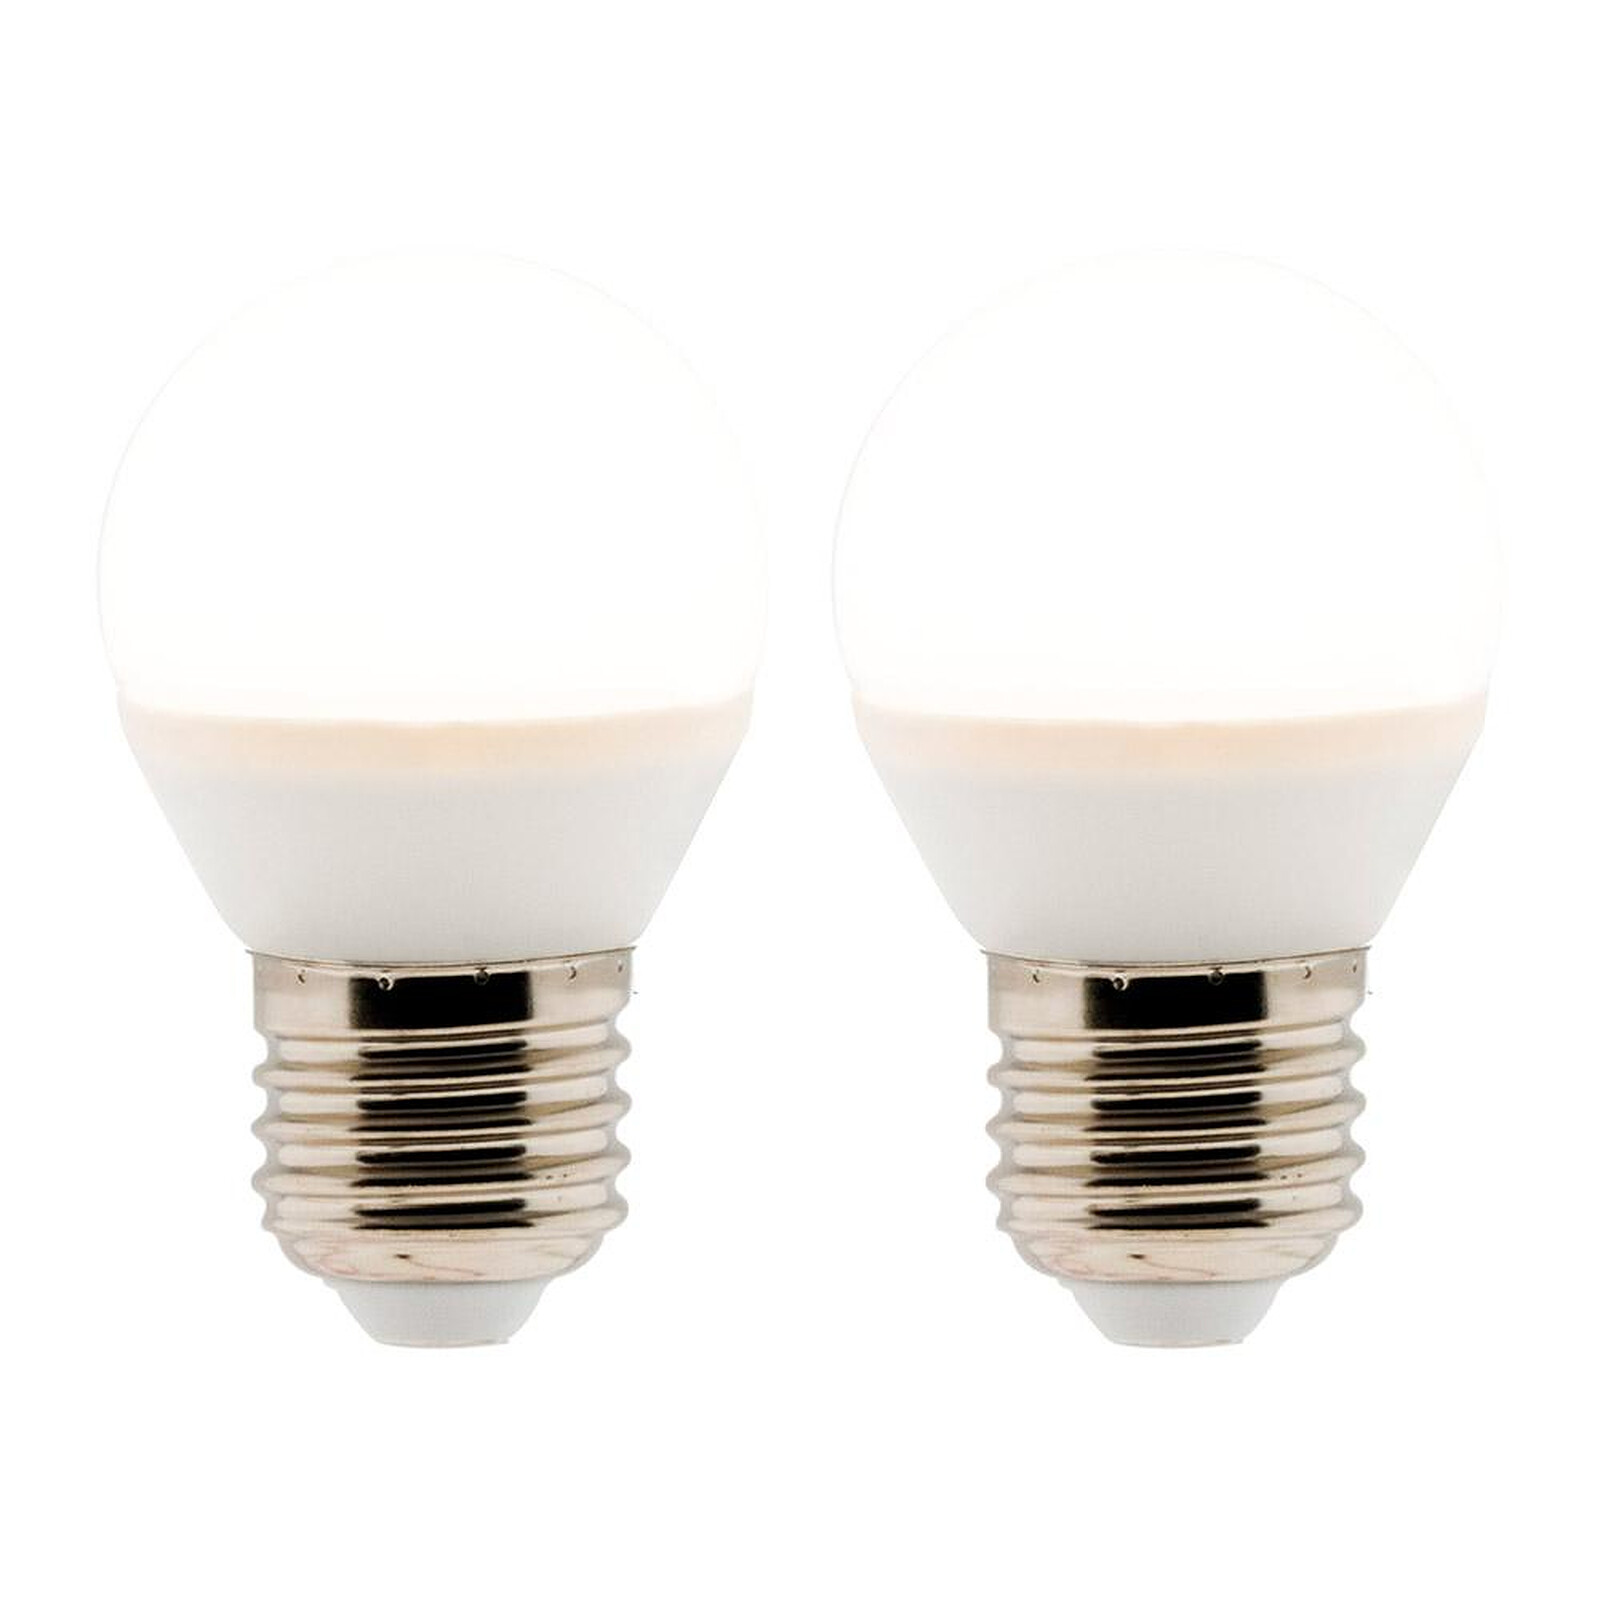 OSRAM ampoule LED E27 4 W blanc chaud lot de 2